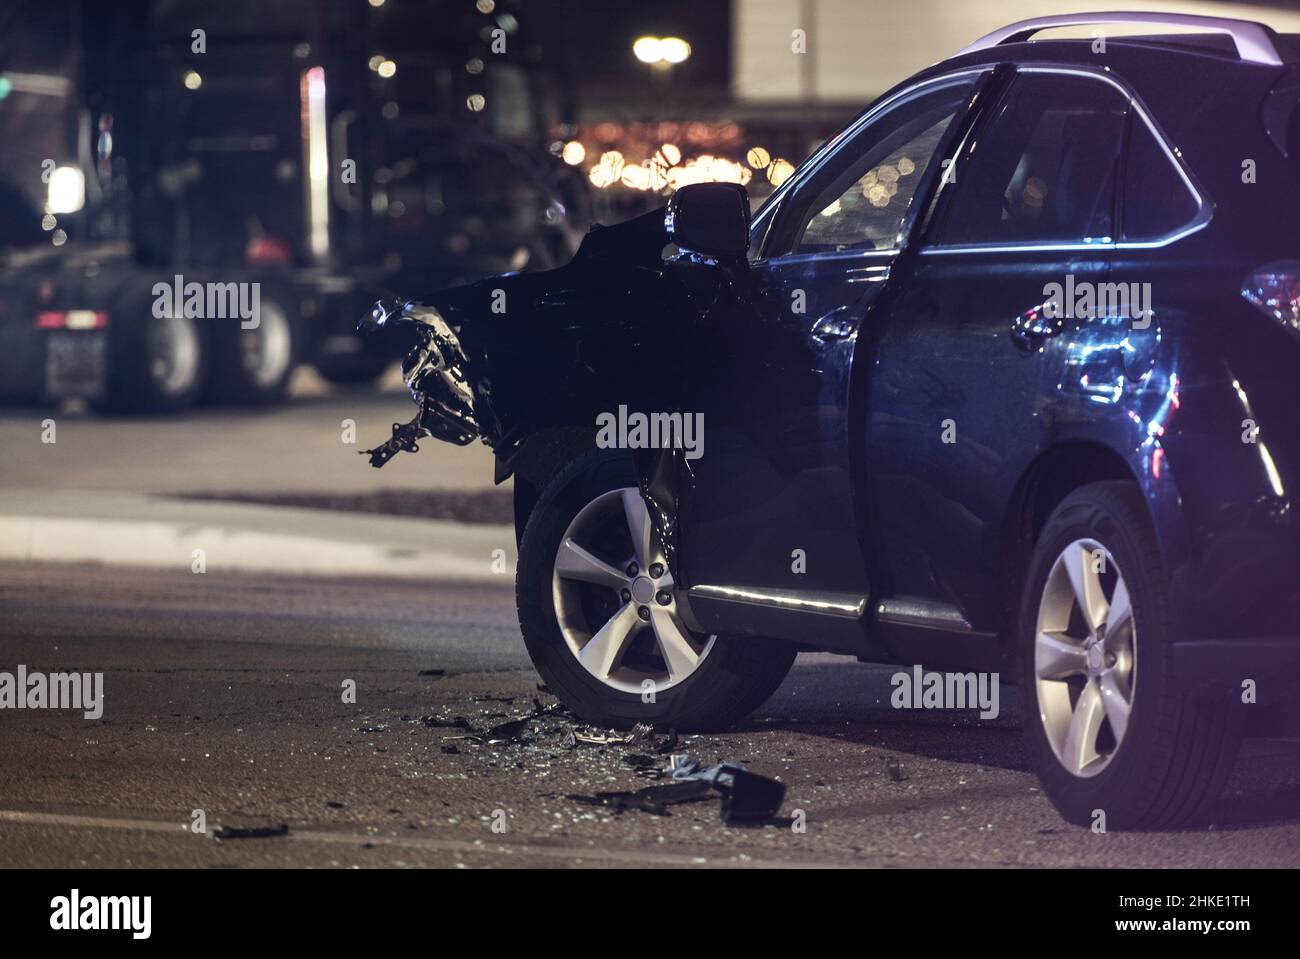 Incidente stradale collisione automobilistica di notte. Auto moderna pesante danneggiata su una strada. Tema sulla sicurezza dei trasporti. Incidente d'auto. Foto Stock